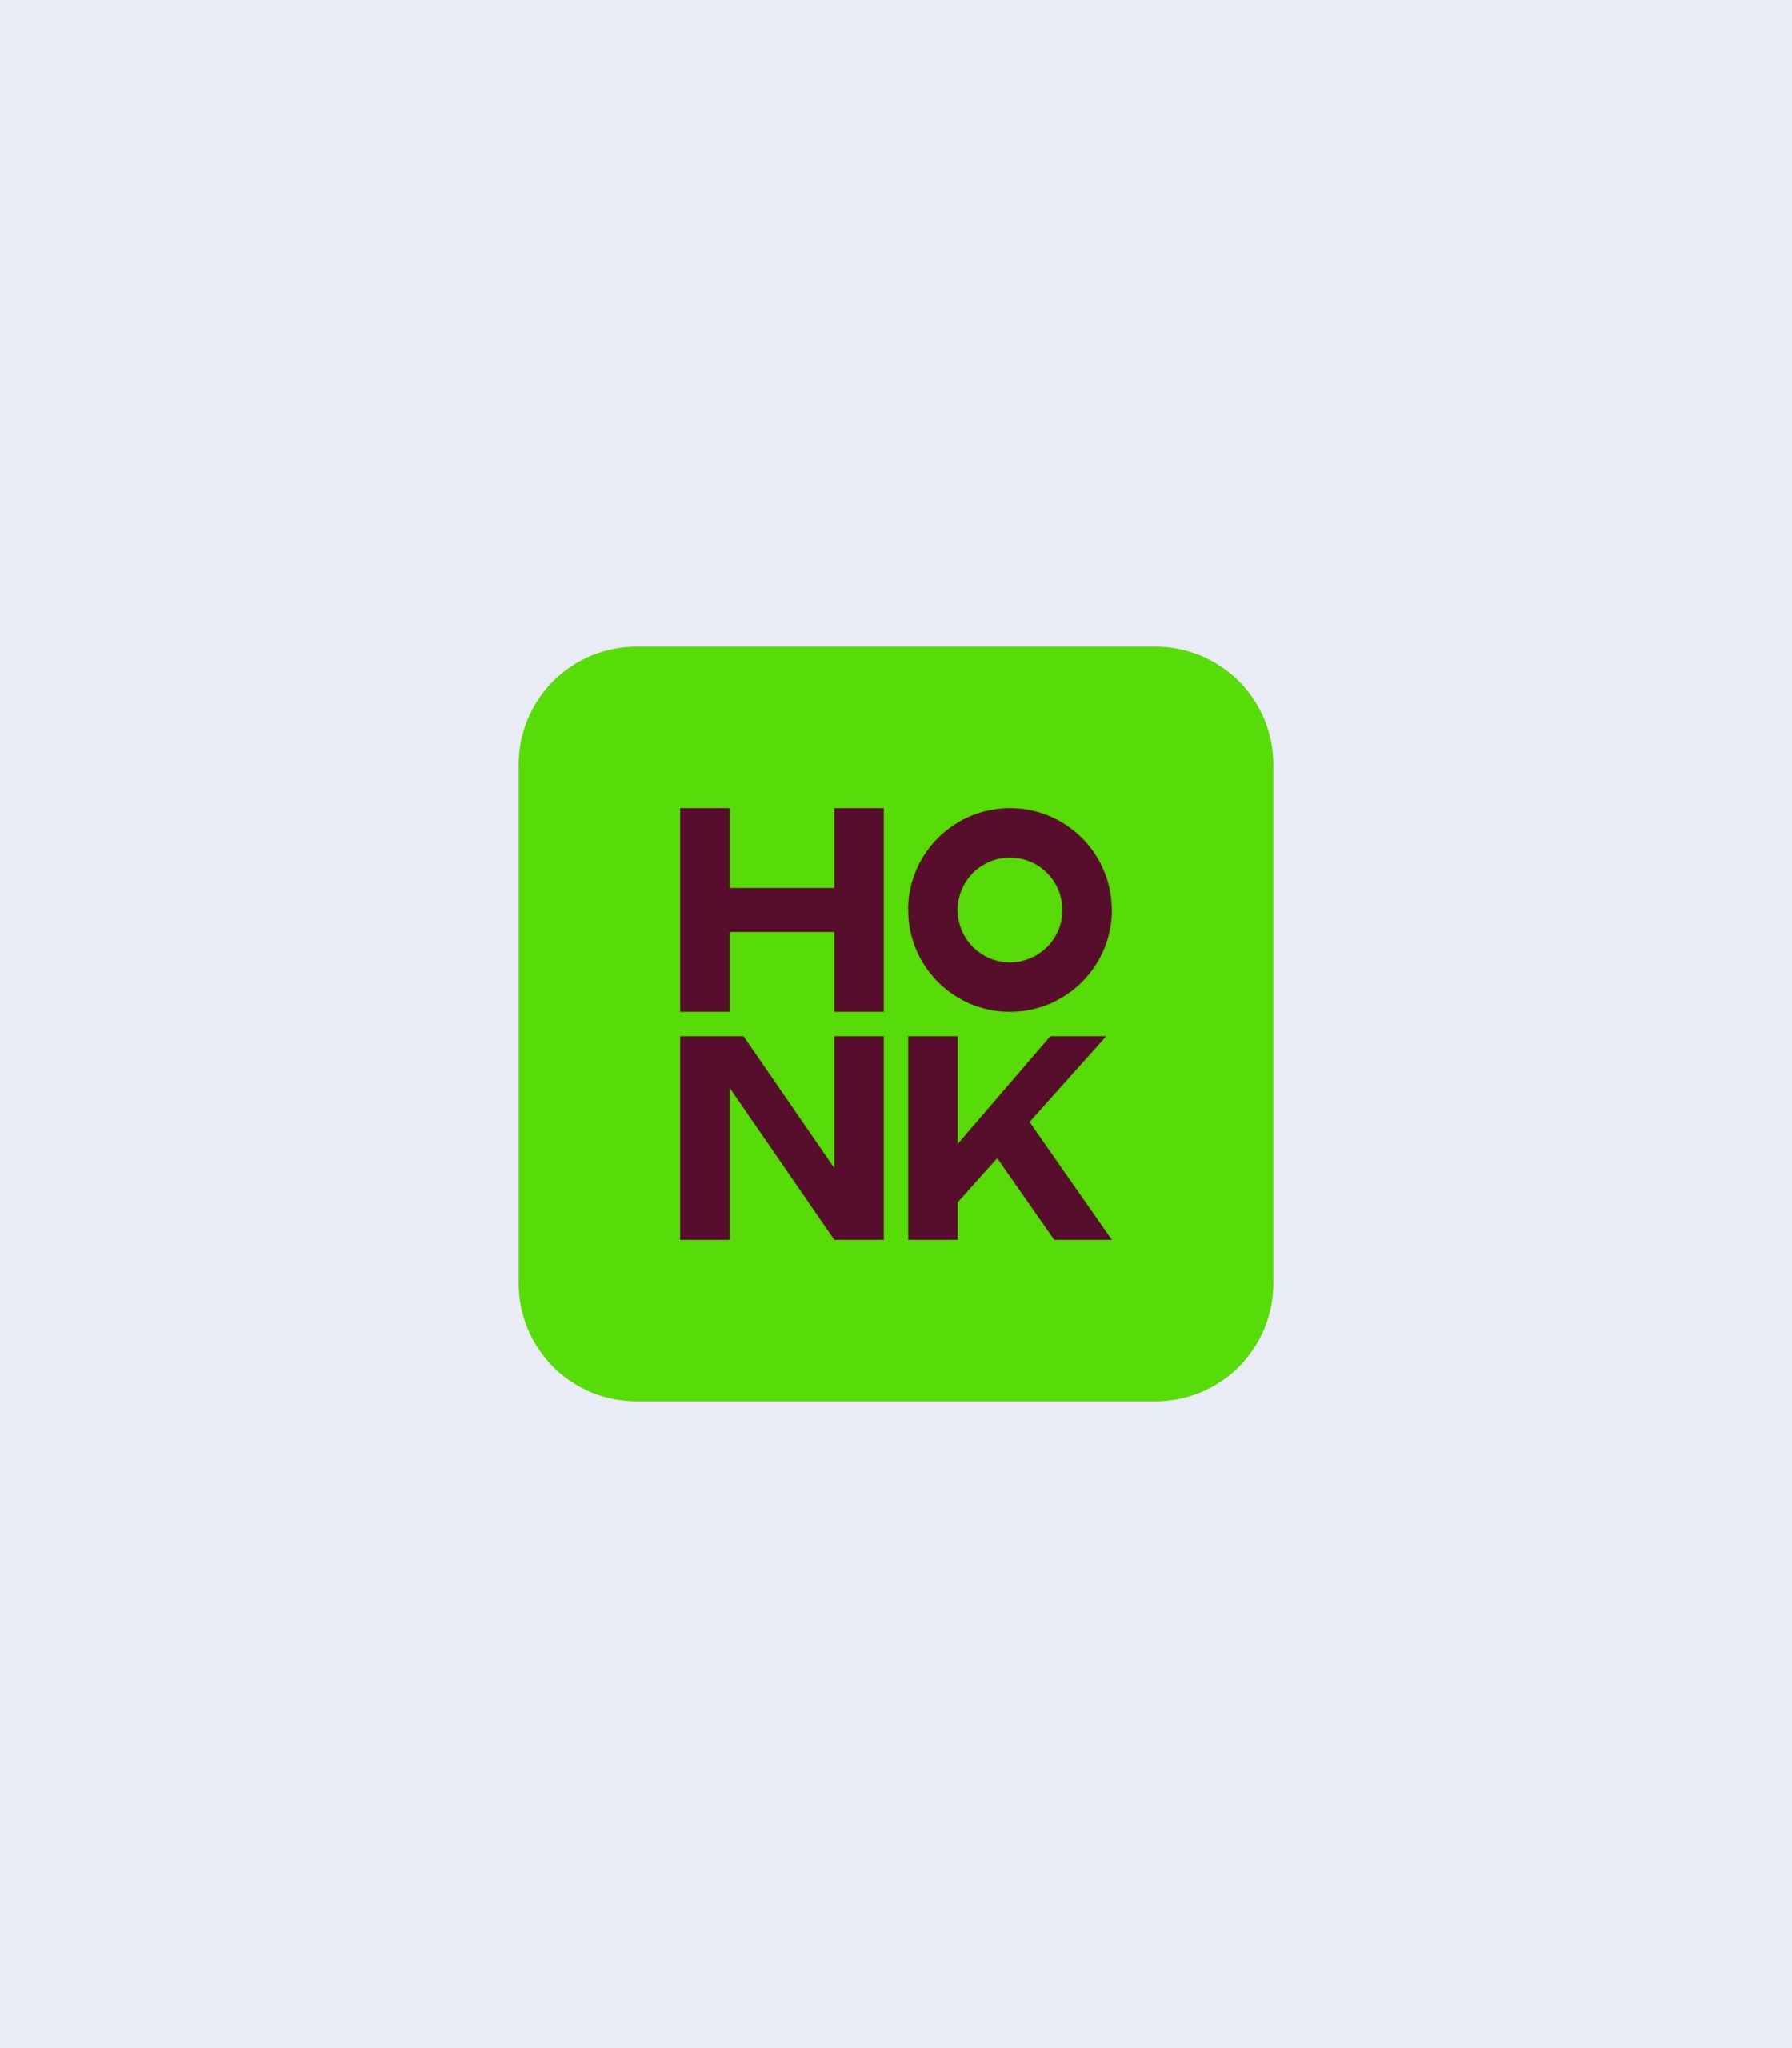 Honk_19